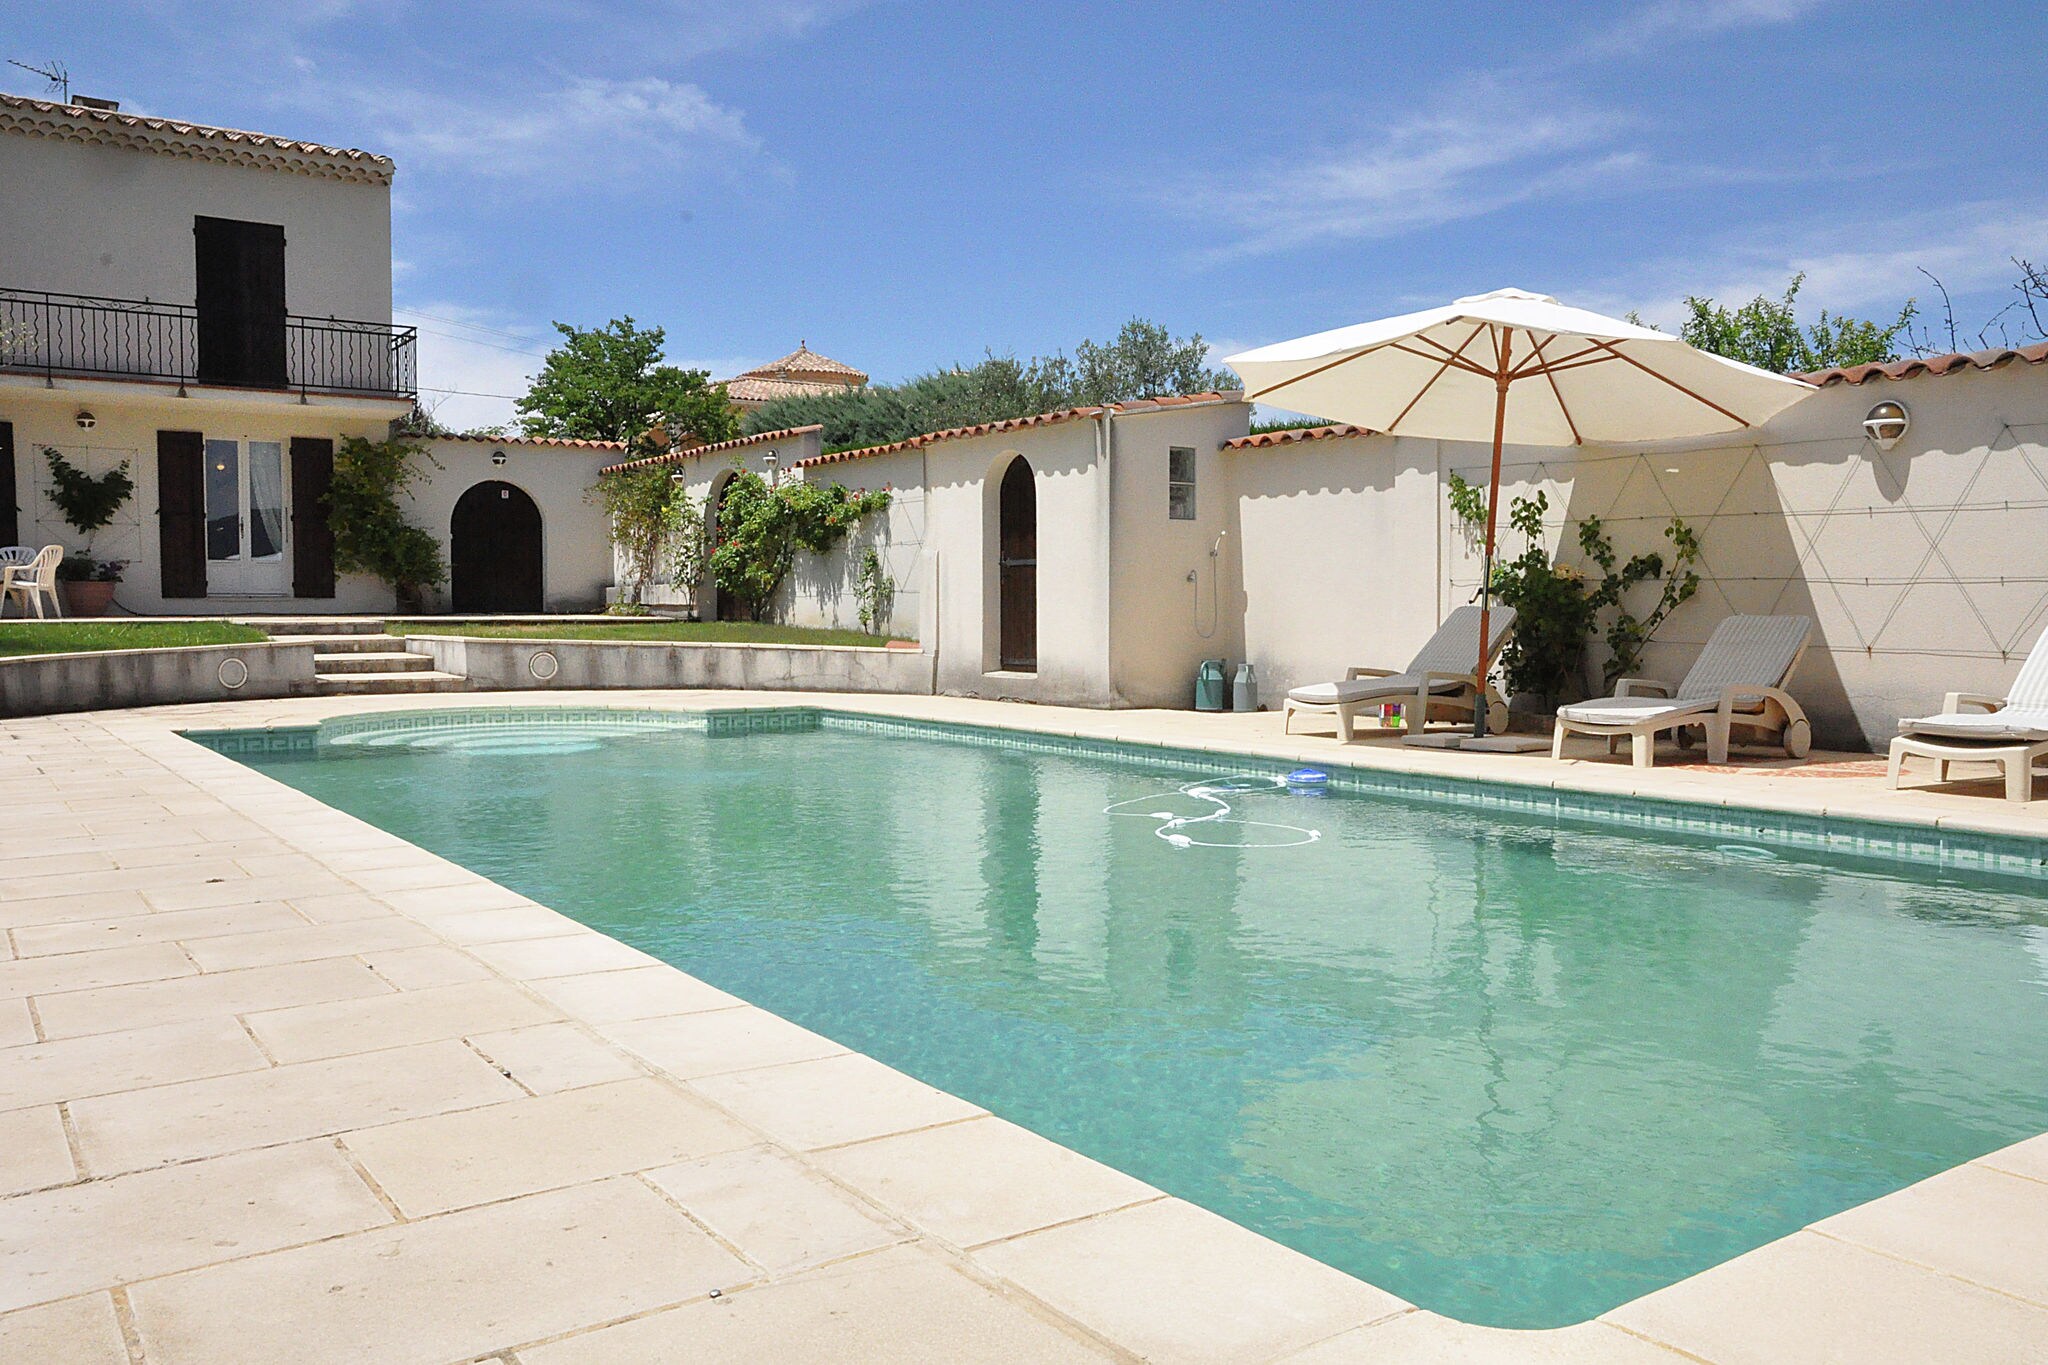 Villa met privézwembad, grote tuin en prachtig uitzicht op de Mont Ventoux